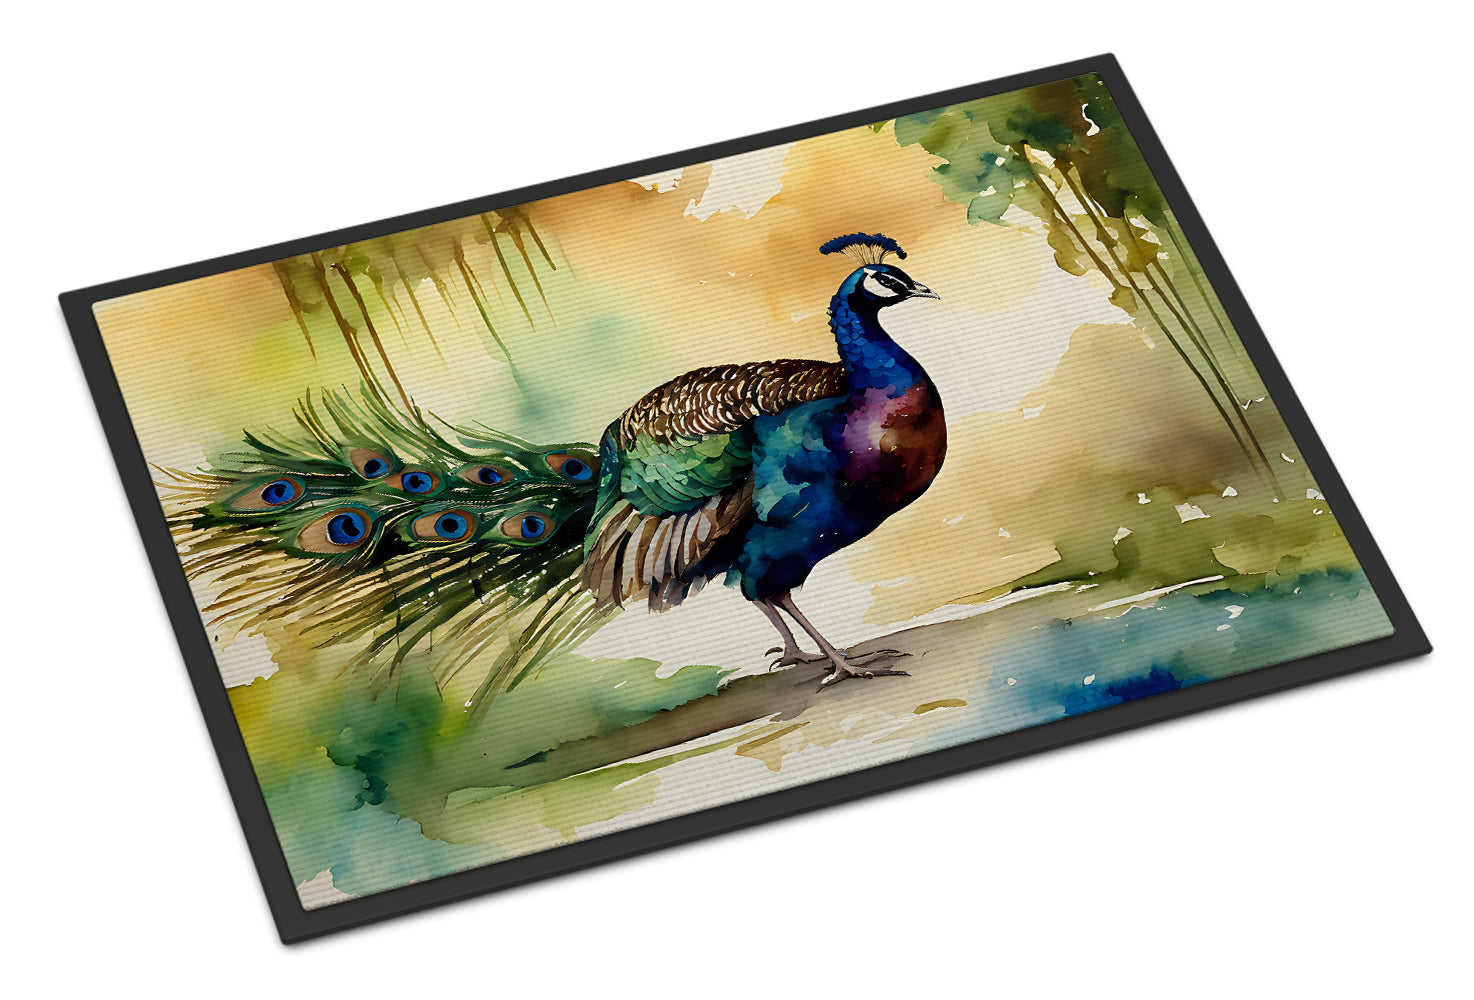 Buy this Peacock Doormat